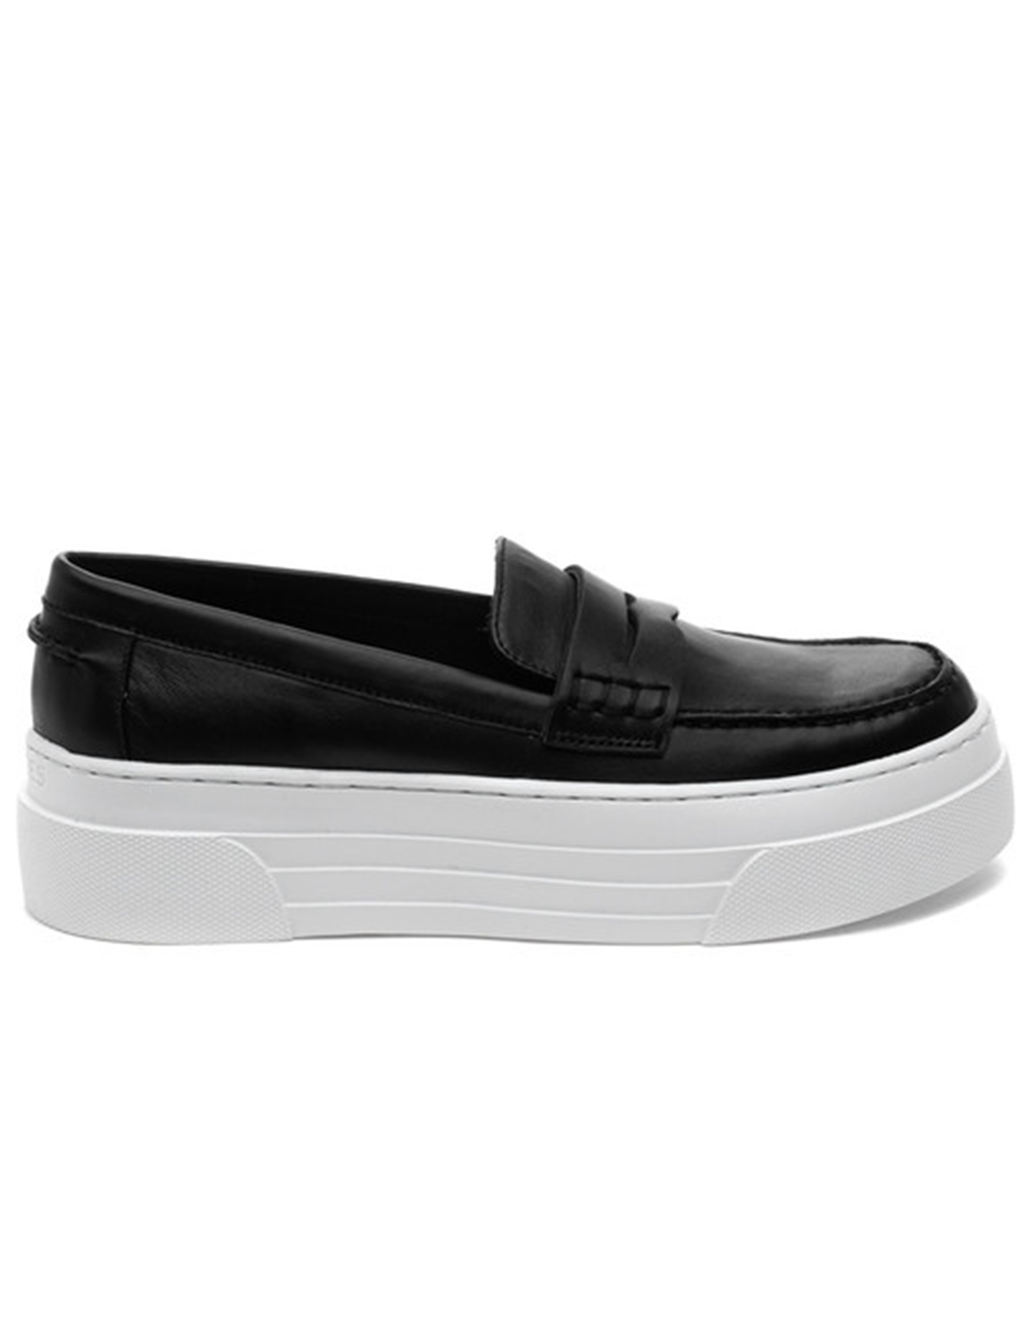 Ava Platform Loafer, Black Leather